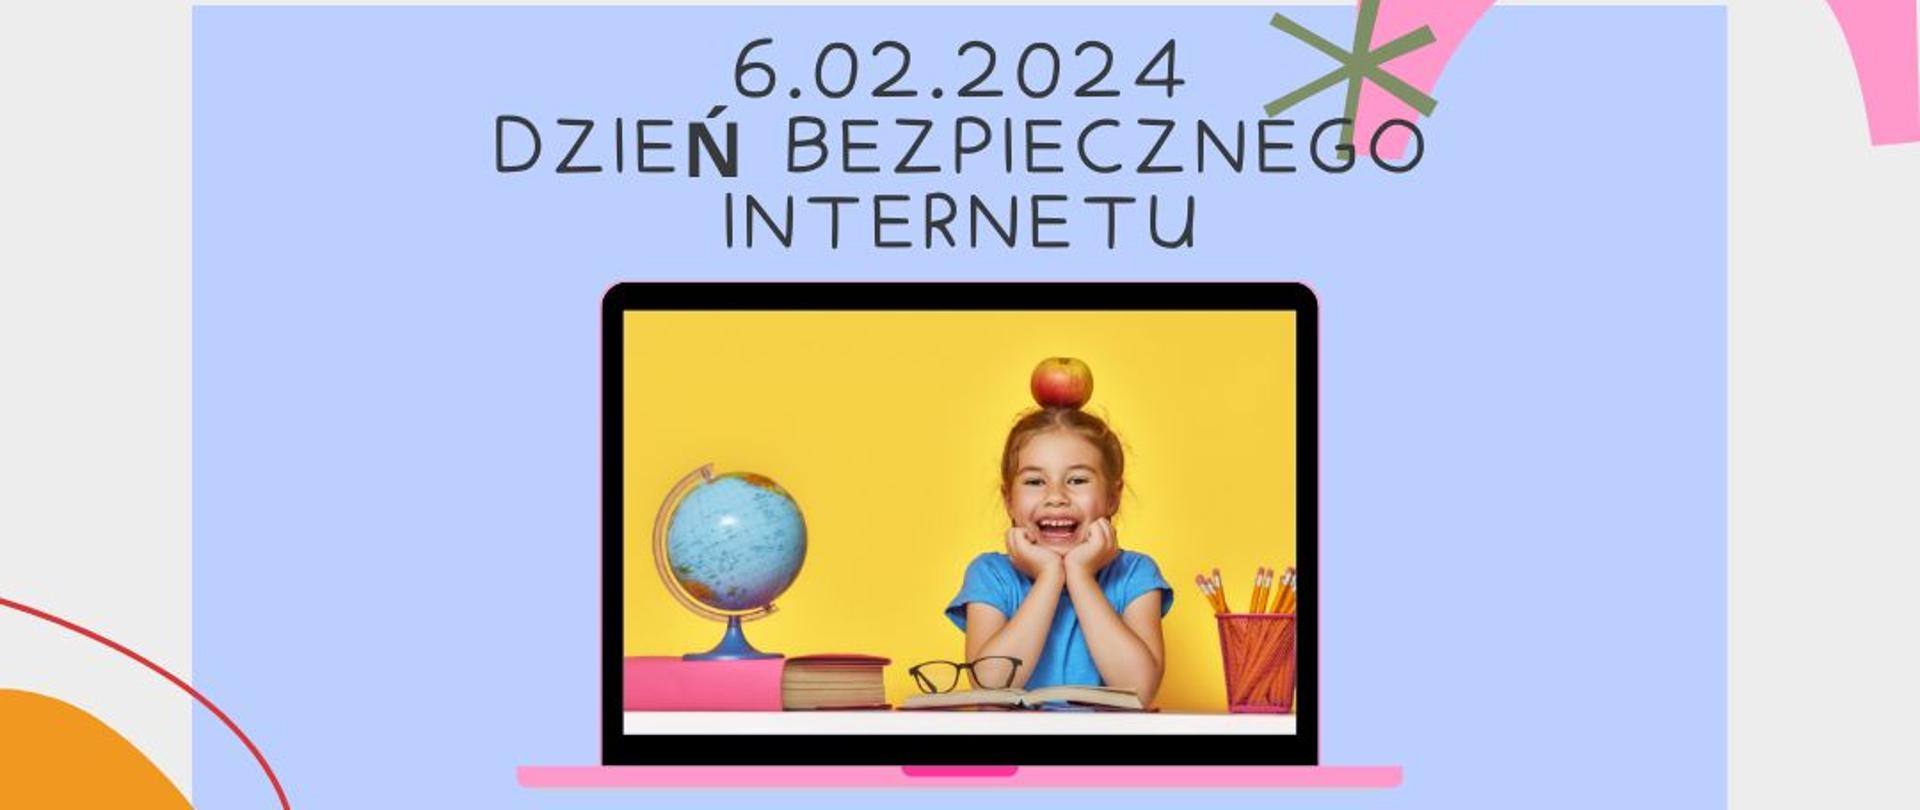 Napis: 06.02.2024 Dzień Bezpiecznego Internetu. Pod napisem zdjęcie uśmiechniętej dziewczynki w monitorze komputera. Logo PIS